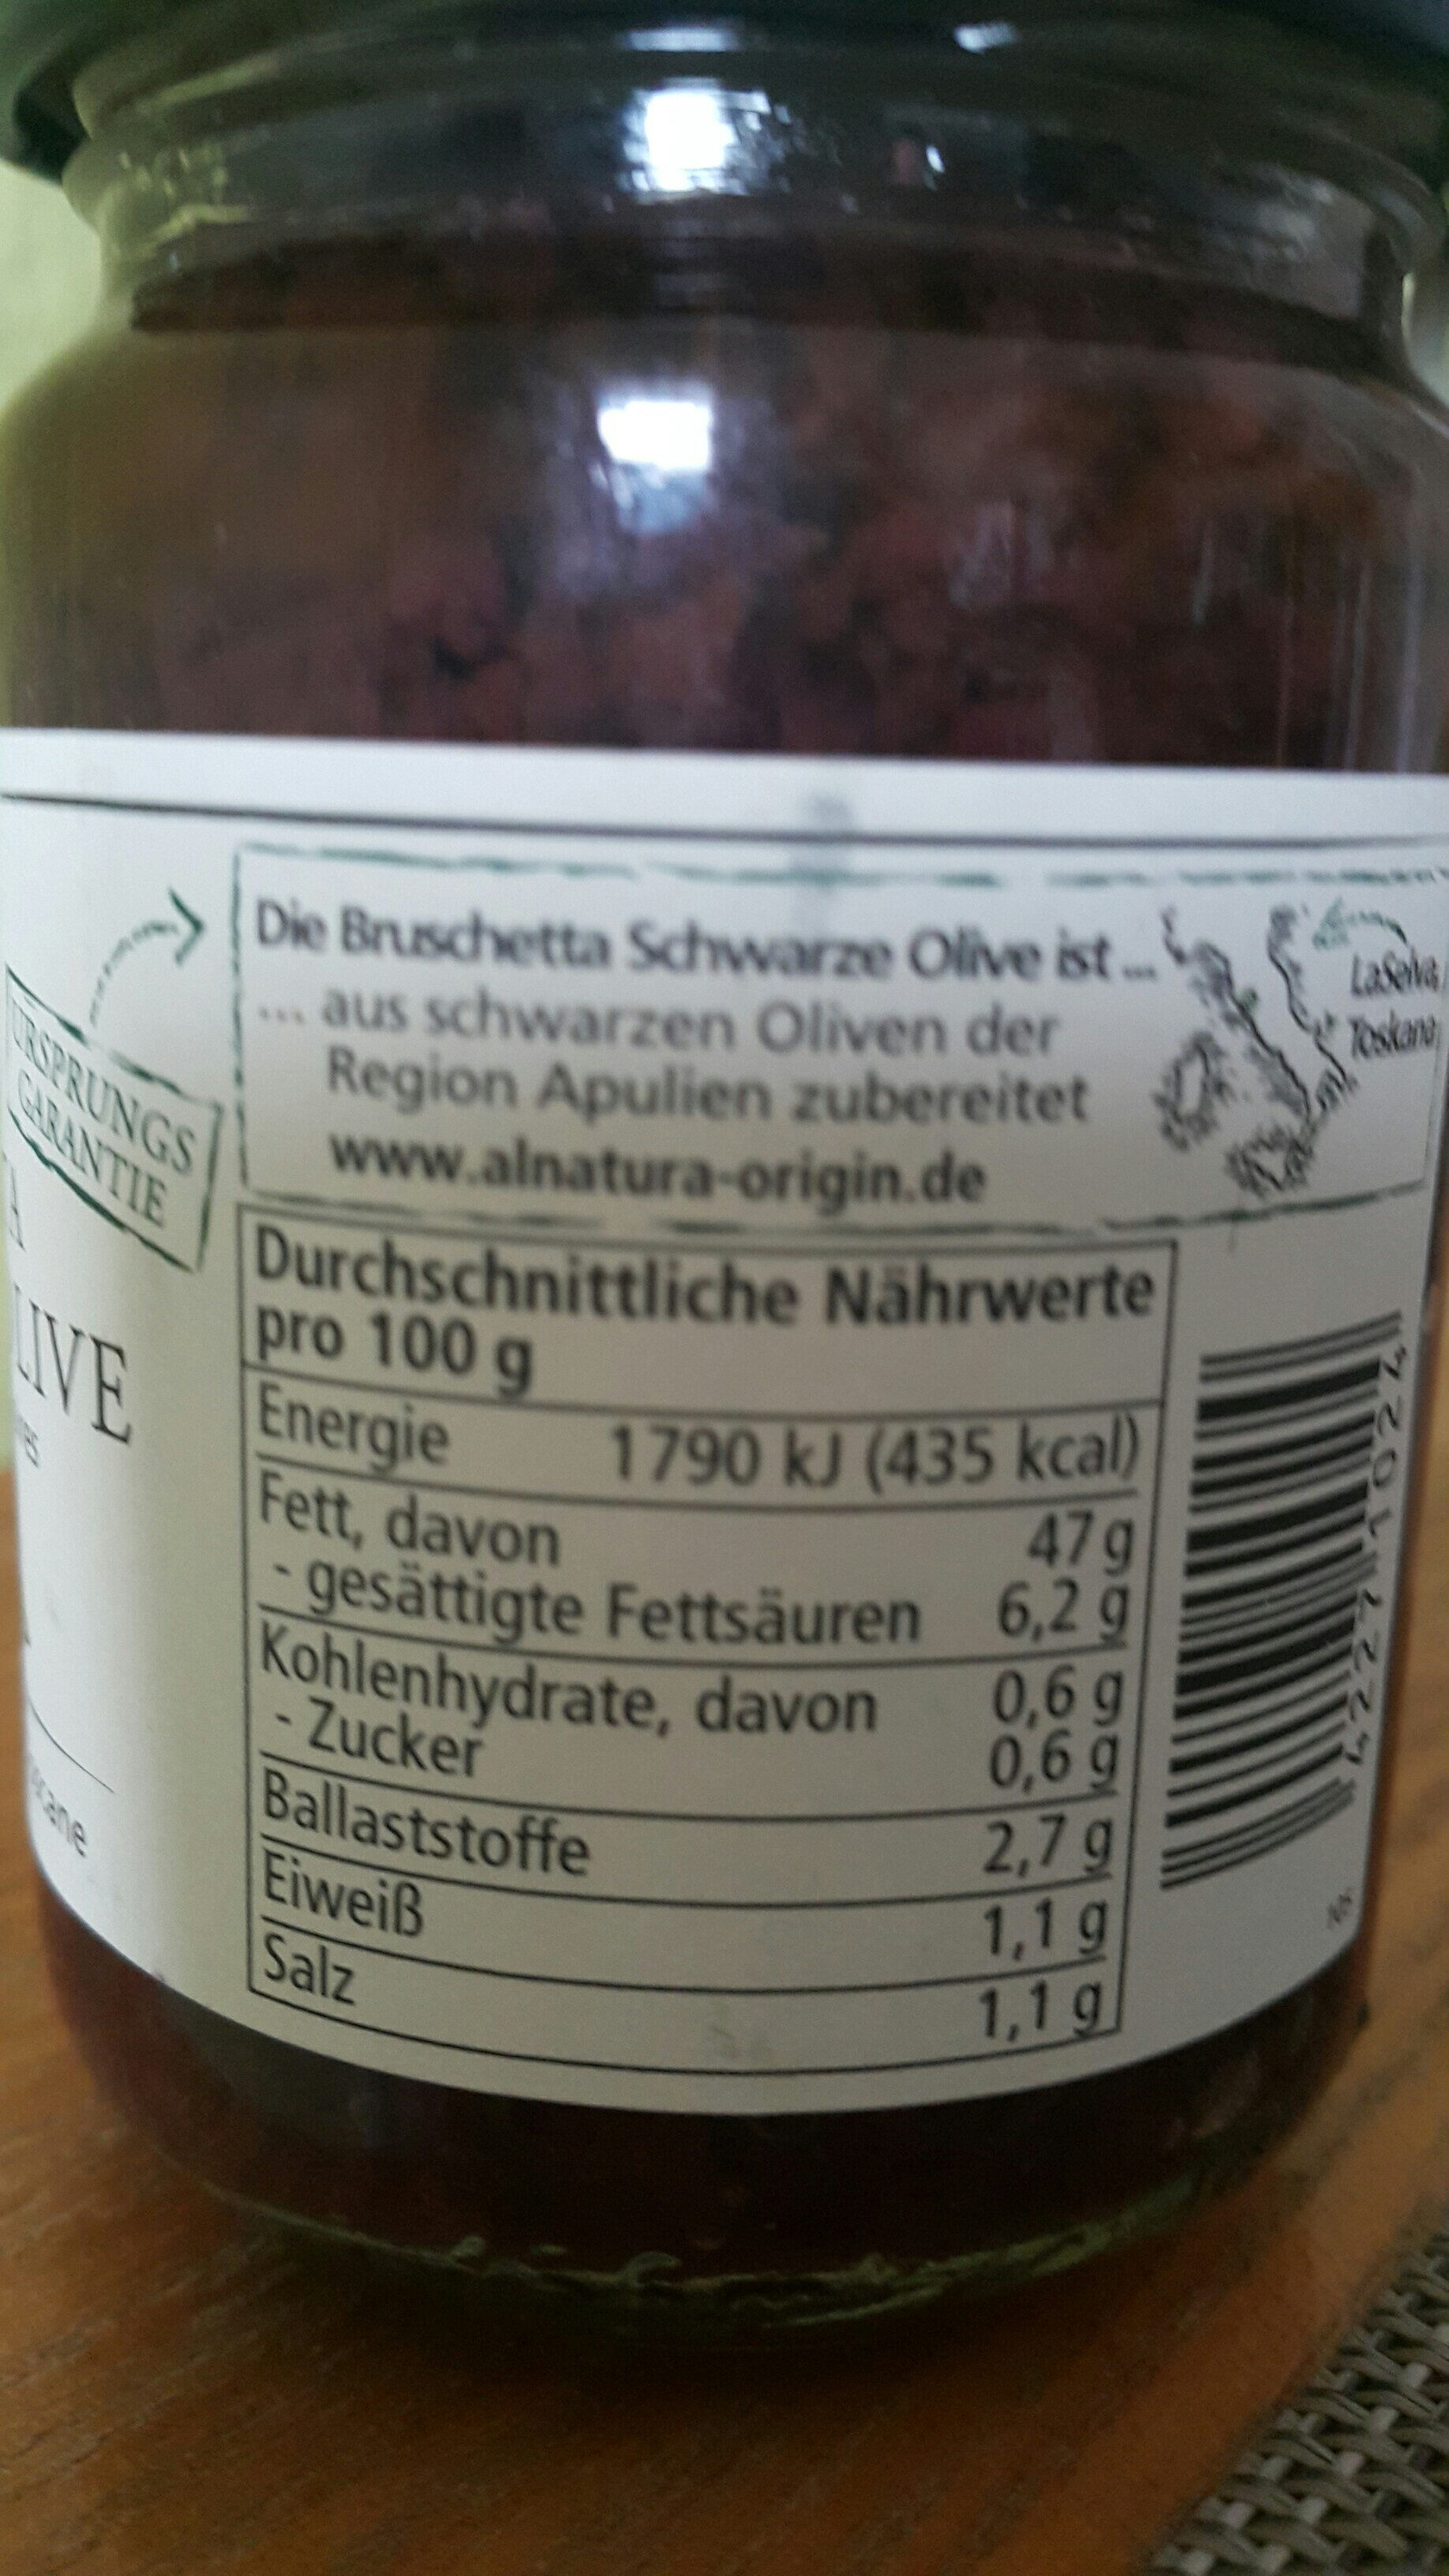 Bruschetta Schwarze Olive - Tableau nutritionnel